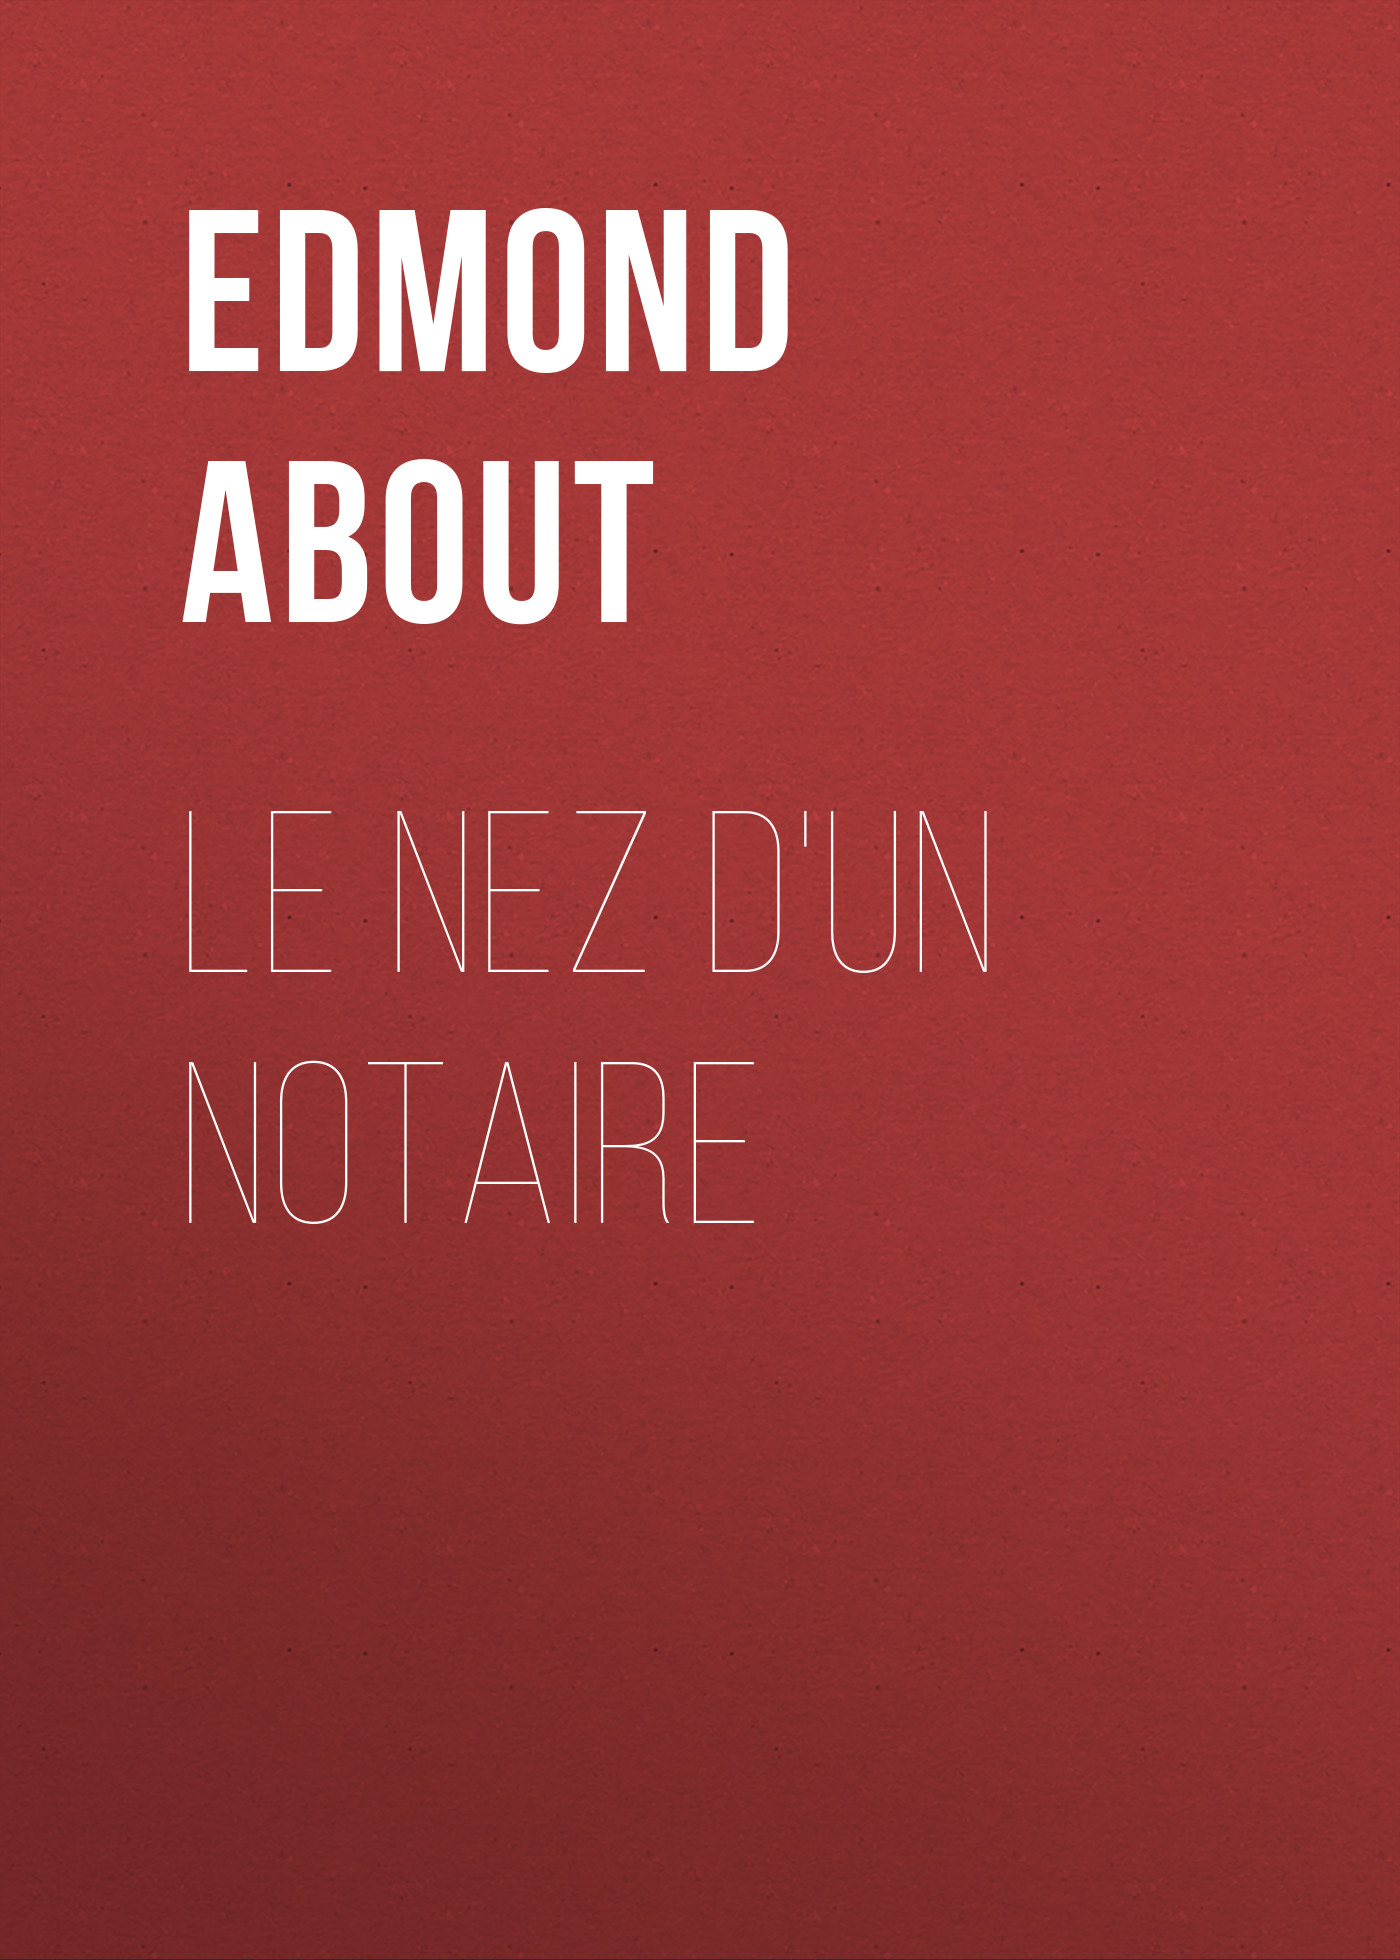 Книга Le nez d'un notaire из серии , созданная Edmond About, может относится к жанру Зарубежная старинная литература, Зарубежная классика. Стоимость электронной книги Le nez d'un notaire с идентификатором 24166108 составляет 5.99 руб.